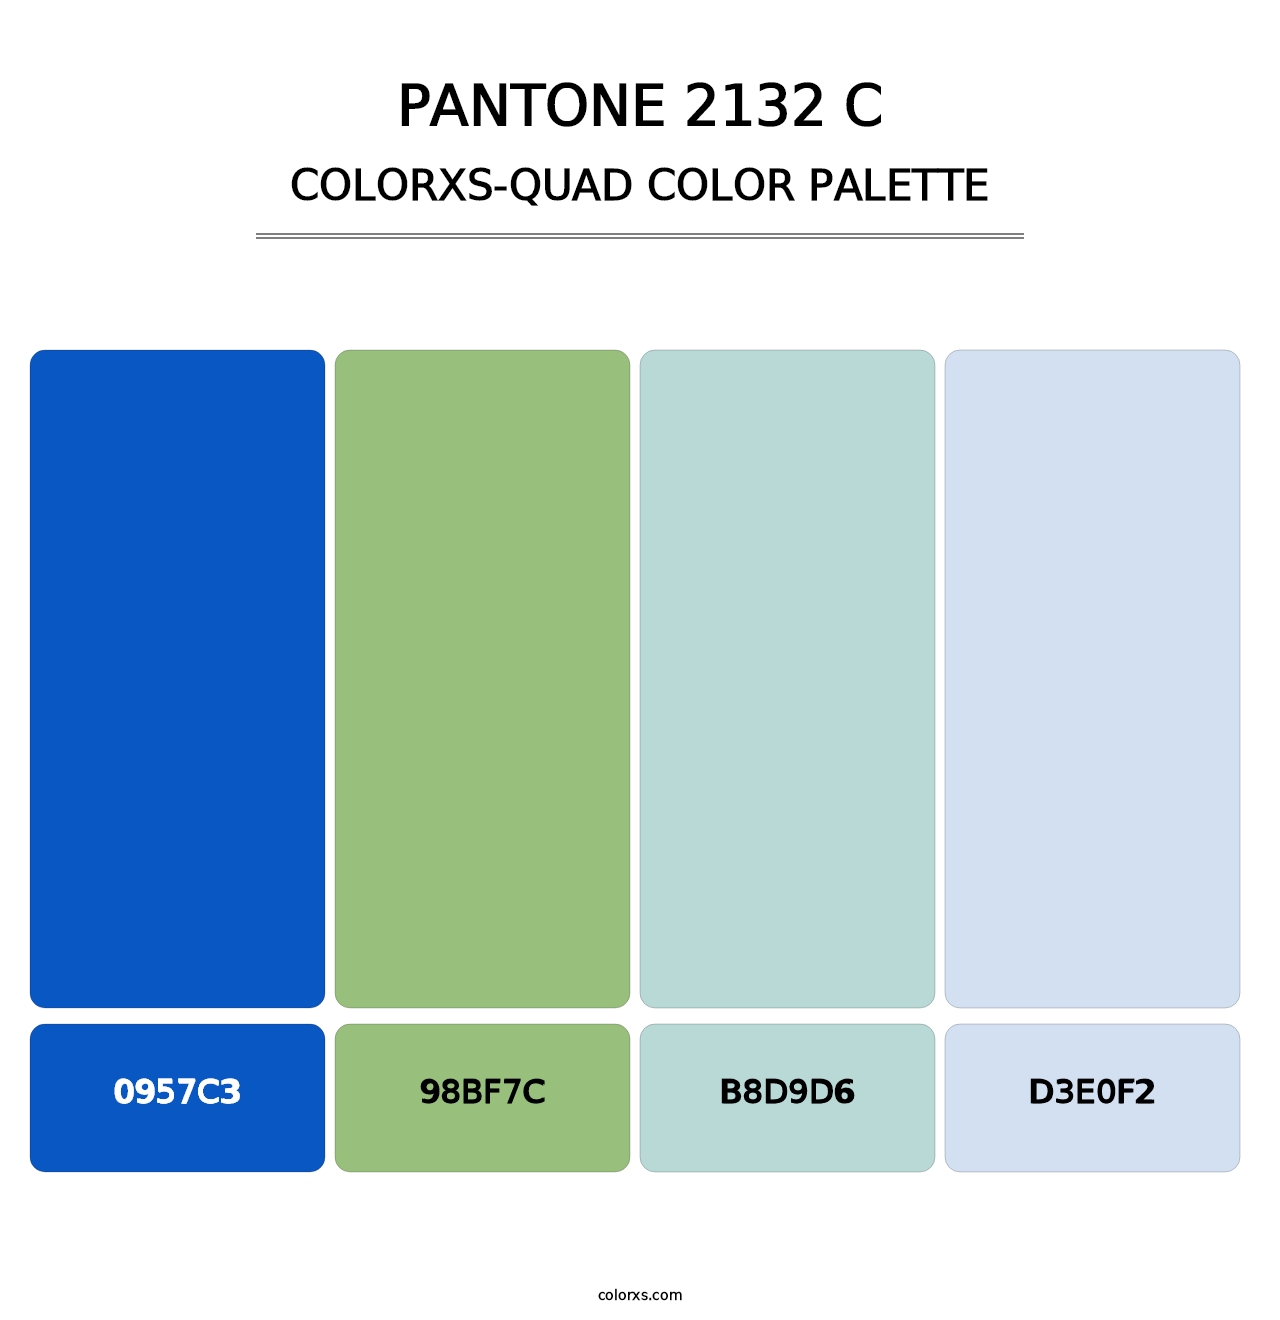 PANTONE 2132 C - Colorxs Quad Palette